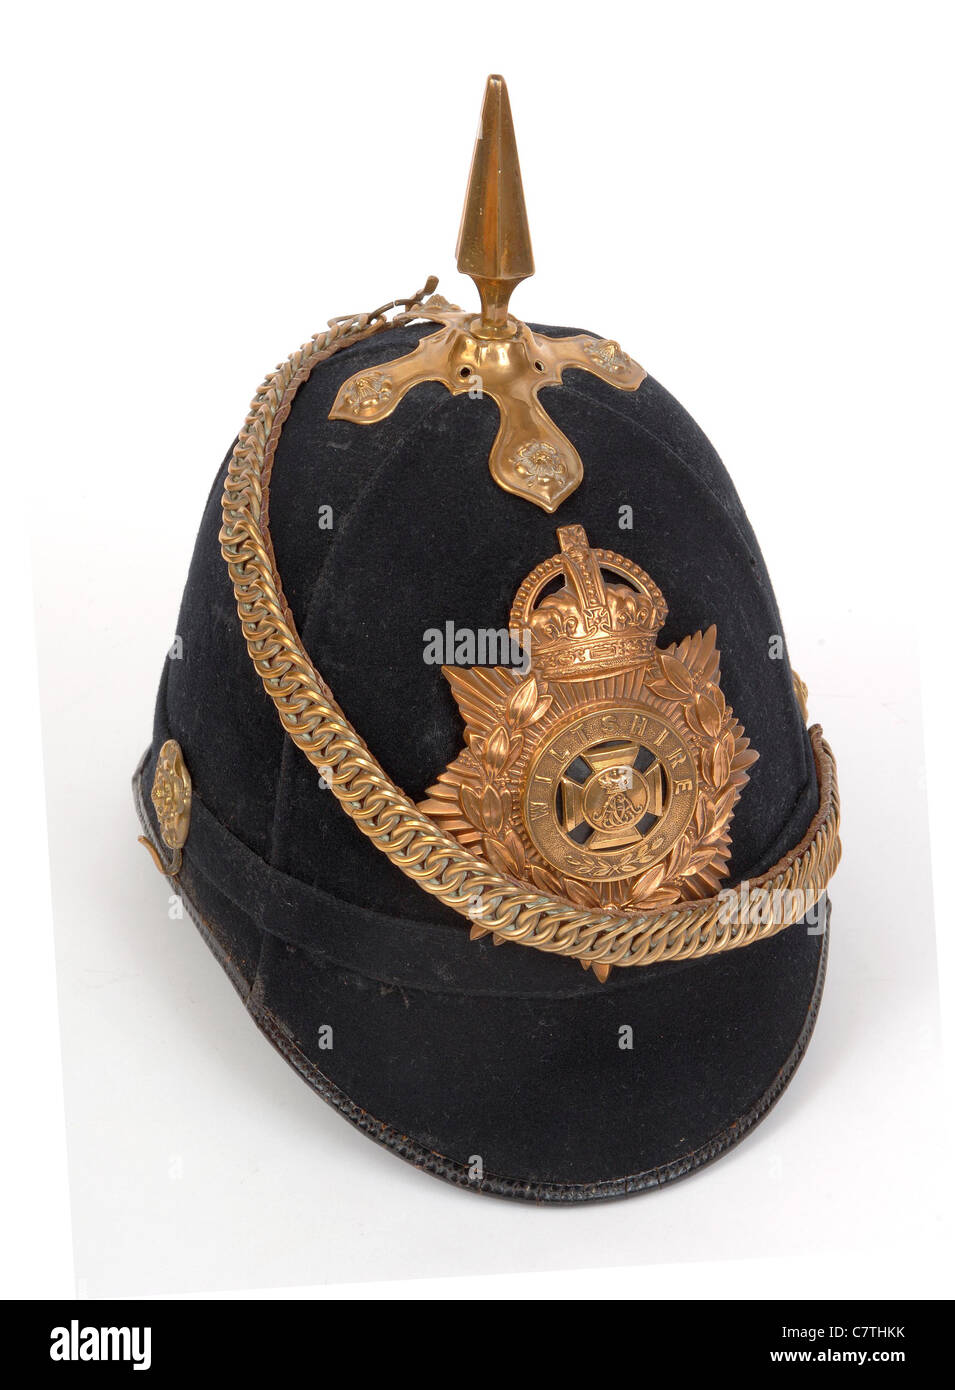 WW1 British Home Servizio casco badged al reggimento Wiltshire, datata 1914. Foto Stock